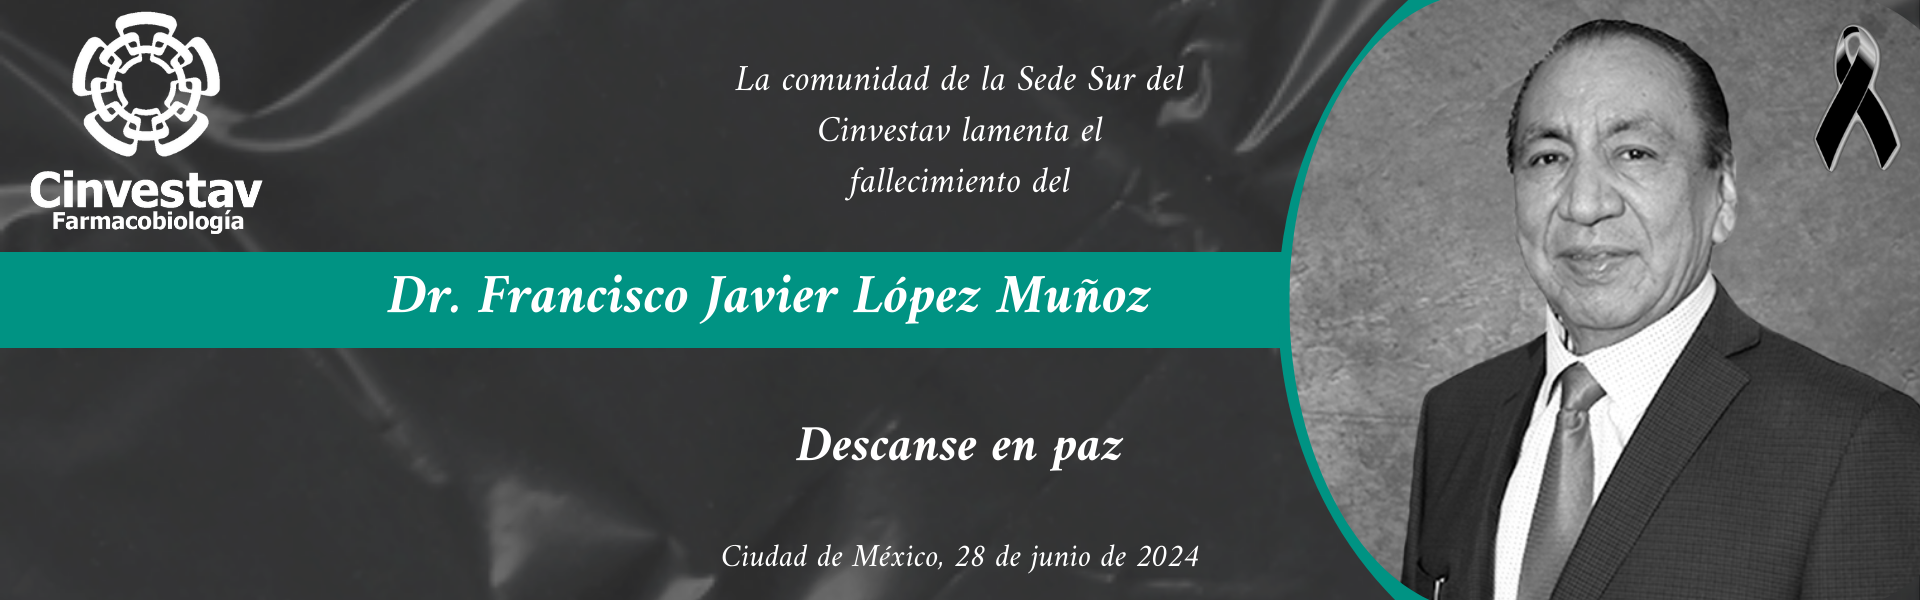 Dr Francisco Javier López Muñoz